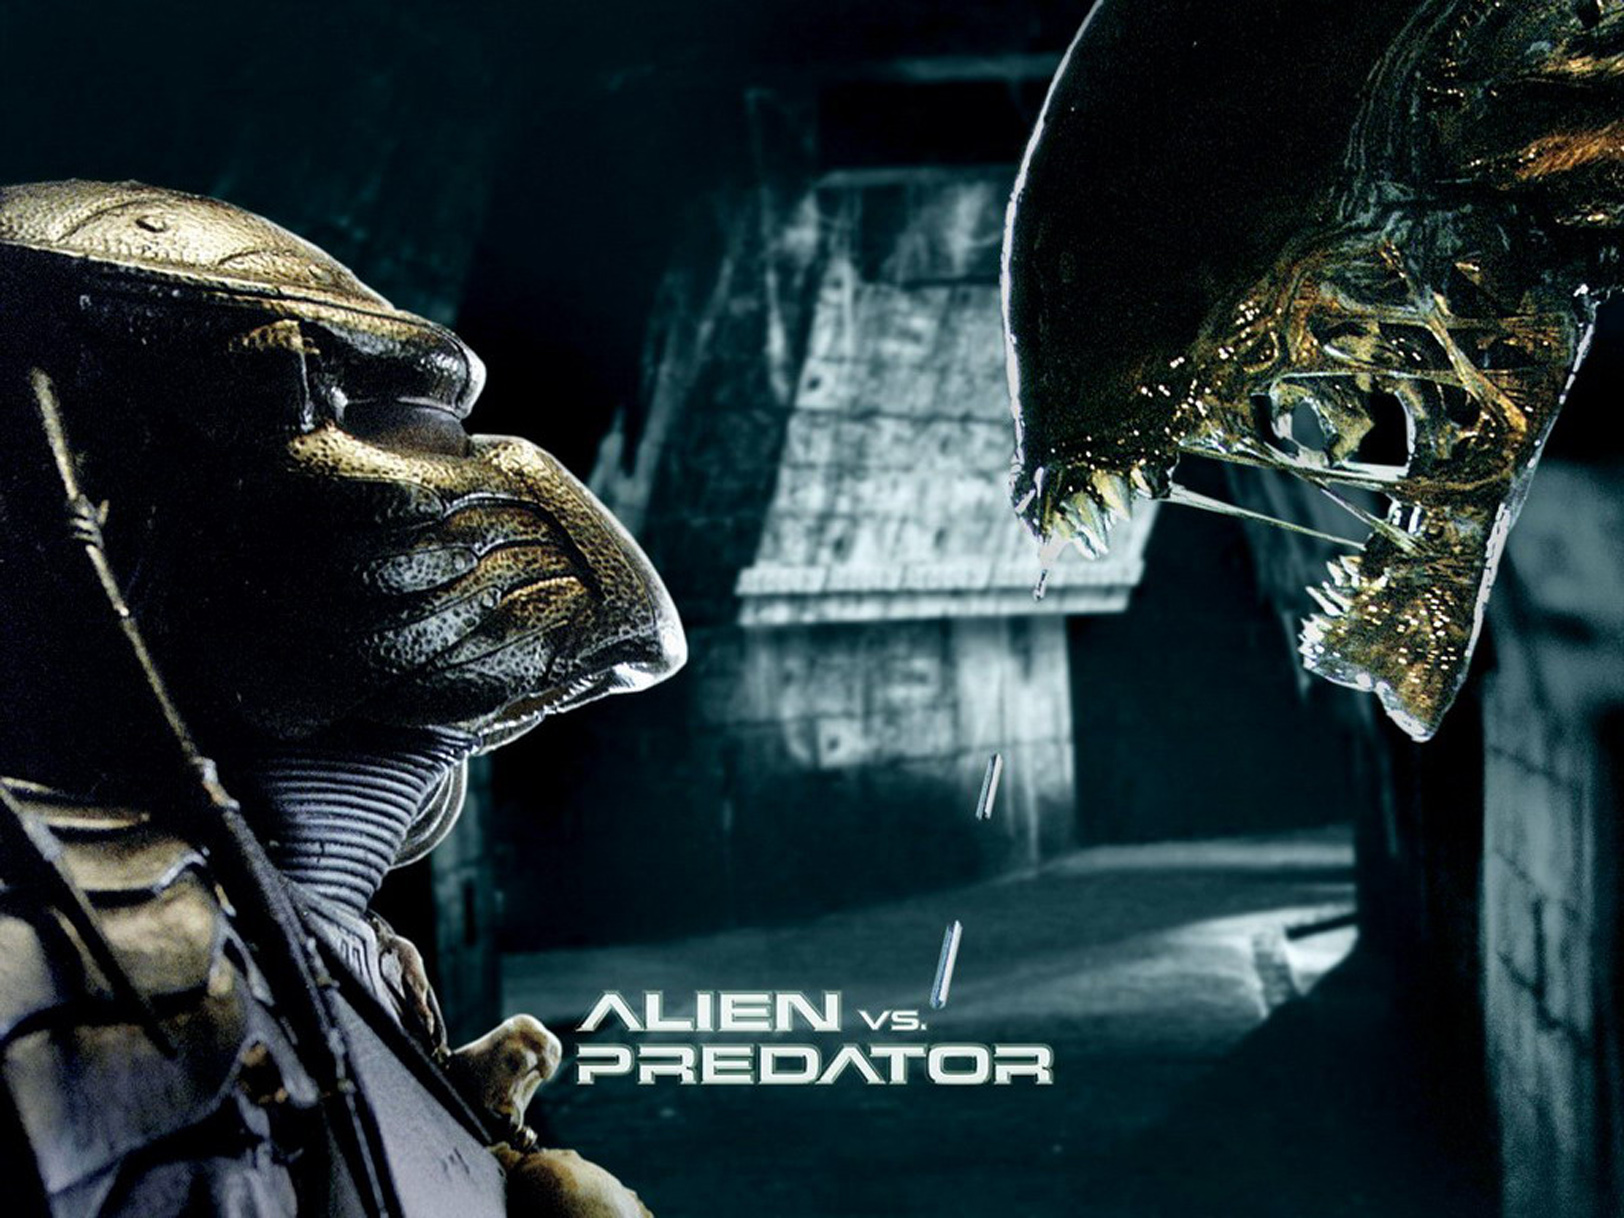 [44+] Alien vs Predator HD Wallpapers on WallpaperSafari